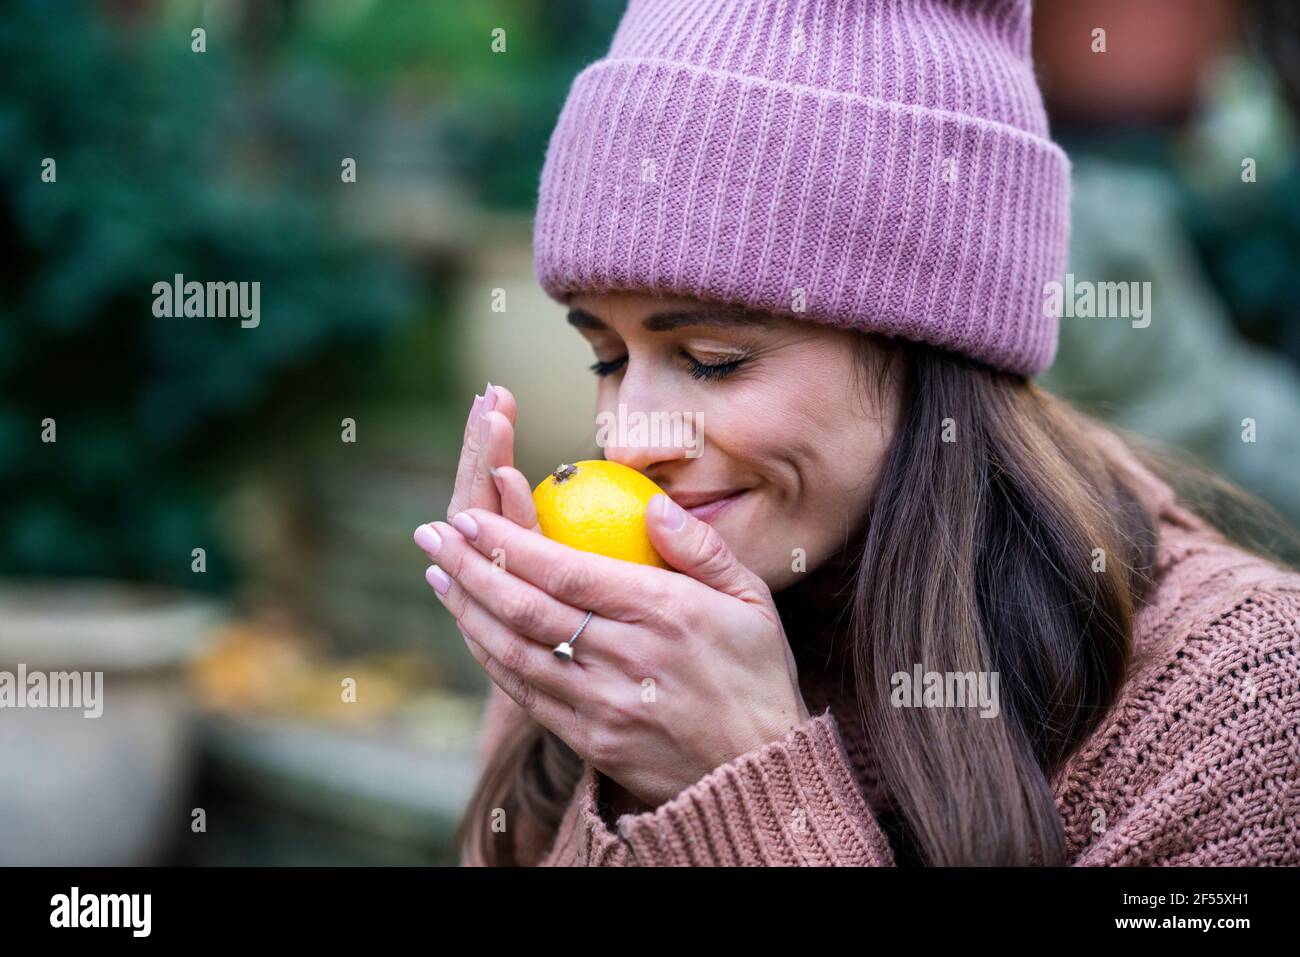 Ritratto di bella donna che indossa cappello rosa a maglia odore fresco limone con occhi chiusi Foto Stock